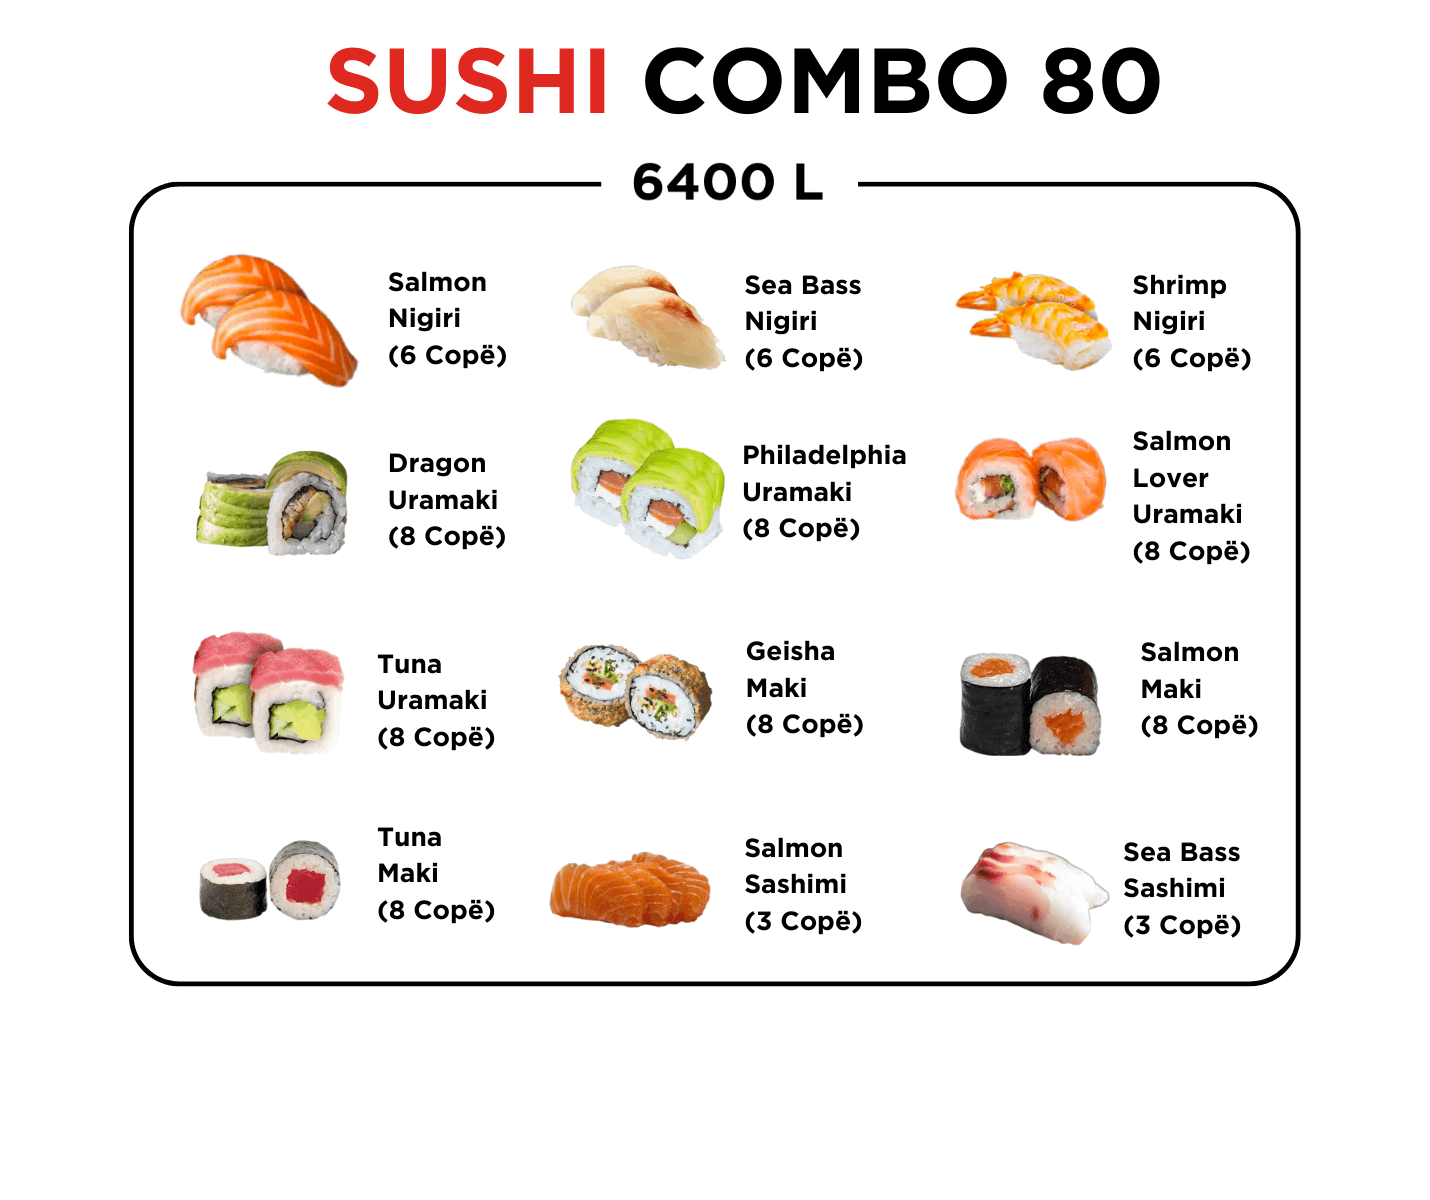 Sushi Combo 80